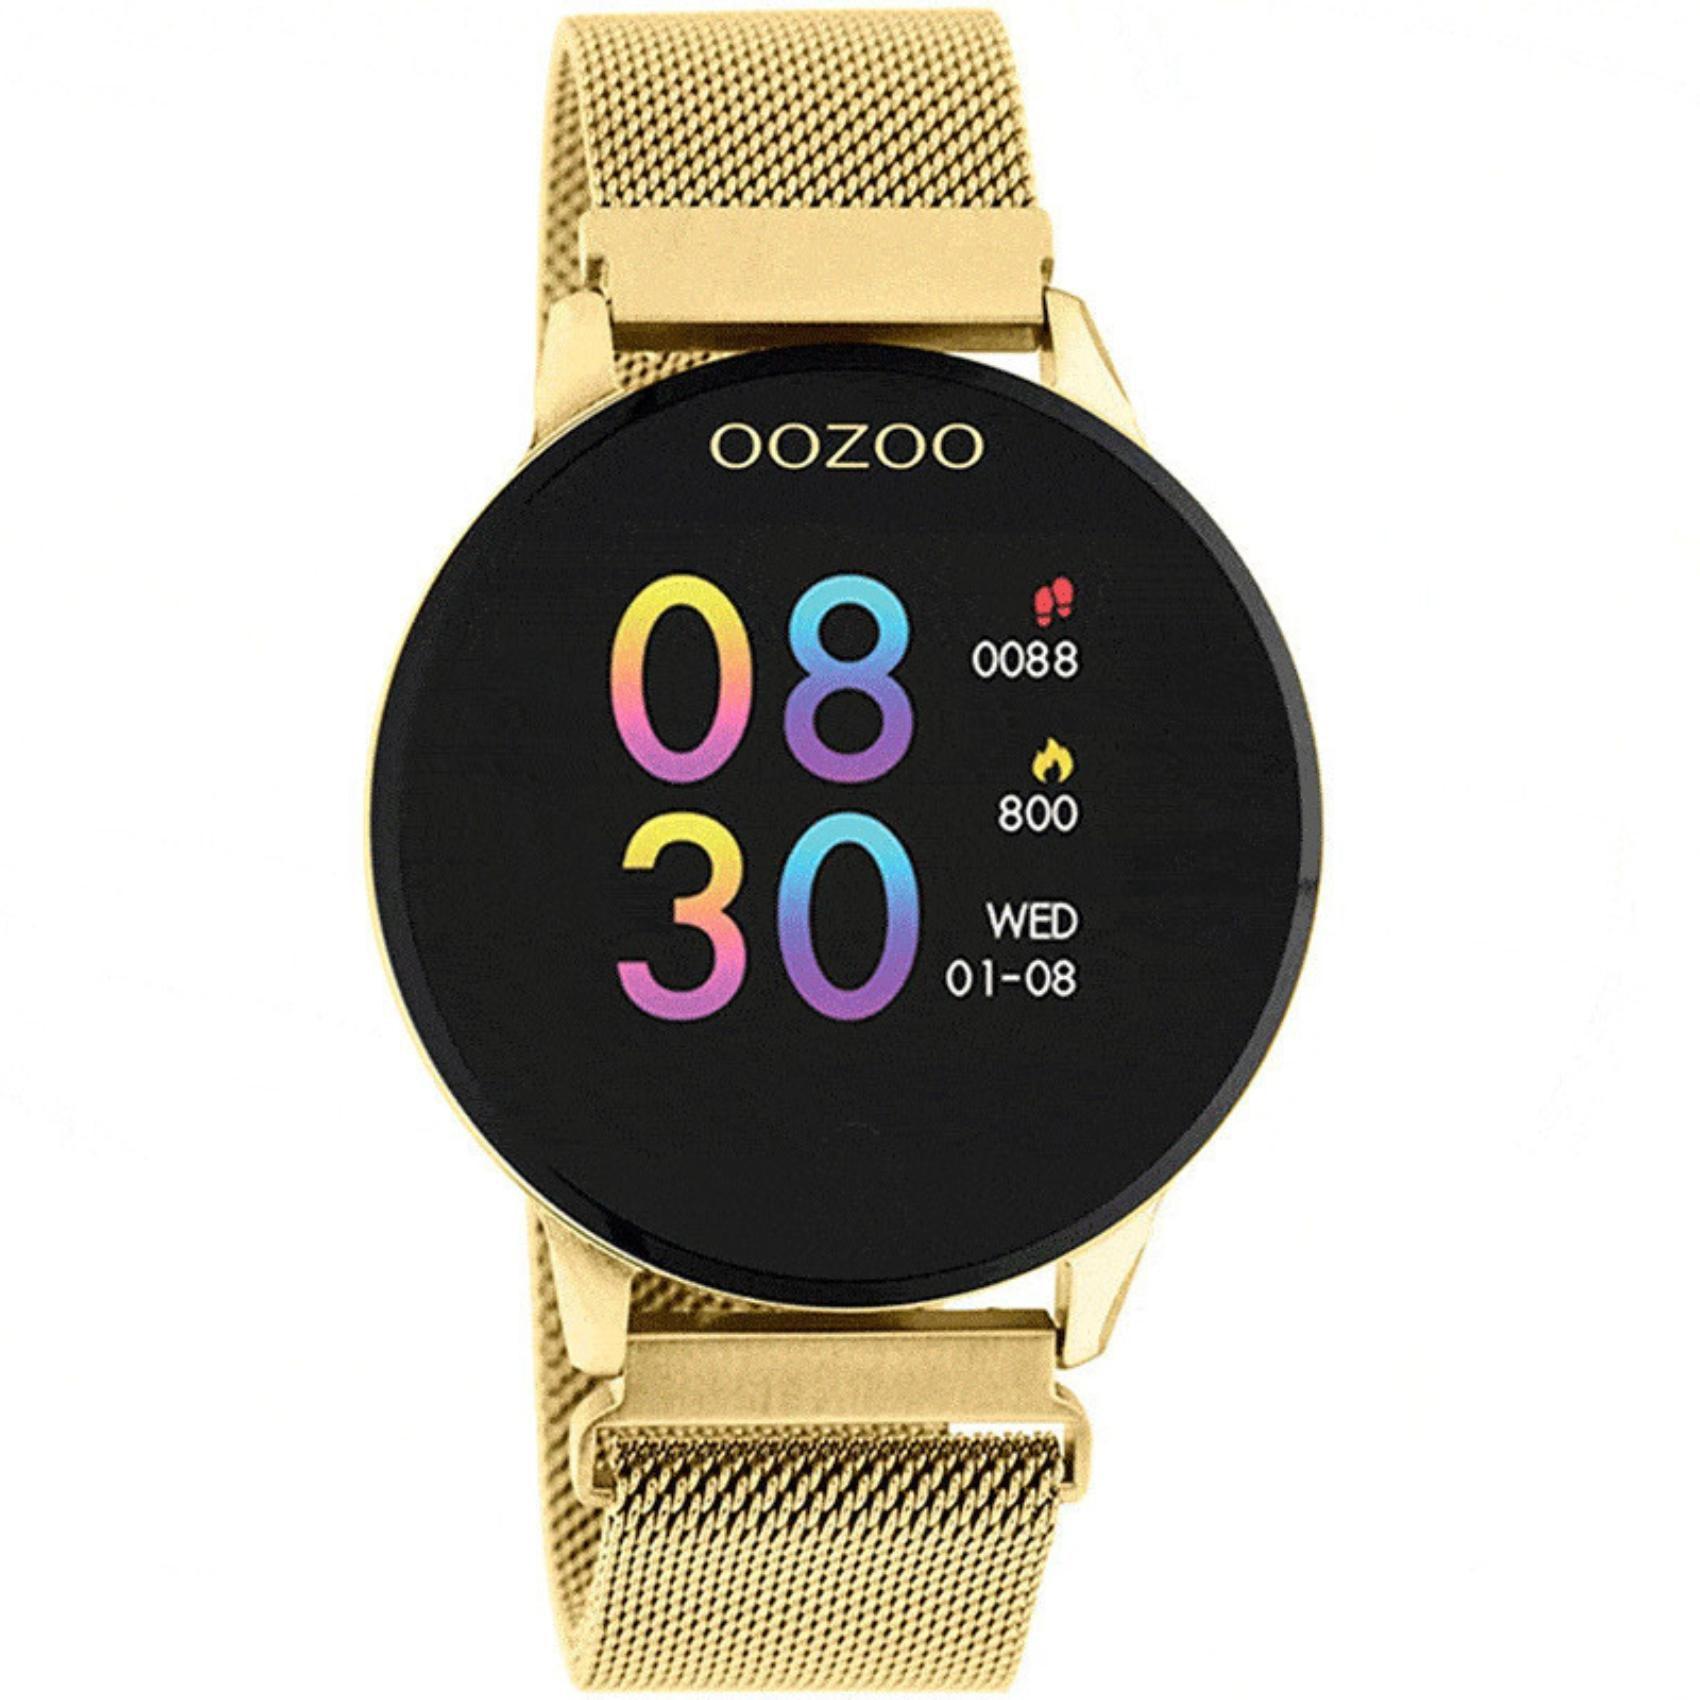 Smartwatch Oozoo Q00121 με χρυσό ατσάλινο μπρασελέ, χρυσή κάσα, οθόνη διάμετρου 43mm με λειτουργίες μέτρησης θερμιδών, βημάτων, καρδιακών παλμών και σύνδεση σε κινητό με bluetooth.